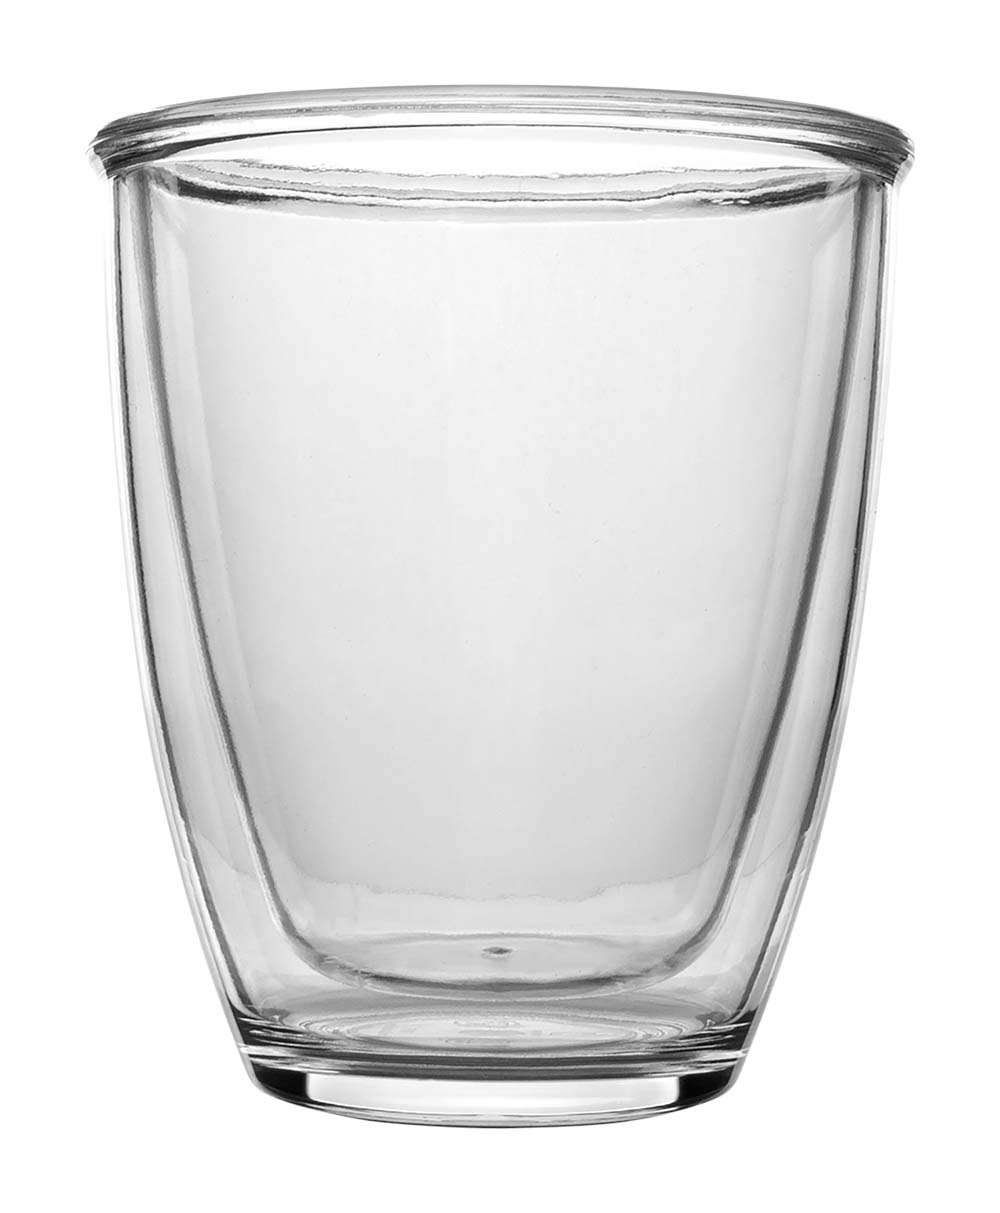 6101325 Sehr handliche doppelwandige Gläser. Die doppelwandigen Gläser haben eine Reihe von Vorteilen. Beispielsweise sorgt die Luft zwischen den 2 Wänden für eine isolierende Wirkung. Dadurch bleibt das Getränk im Glas länger warm. Darüber hinaus sorgt die zusätzliche Wand dafür, dass das Glas mit heißen Getränken leicht gehalten werden kann. Die Außenwand wird nicht so heiß. Die Gläser bestehen aus Polycarbonat, wodurch sie sehr stark und praktisch unzerbrechlich sind. Das Set enthält 2 doppelwandige Gläser.